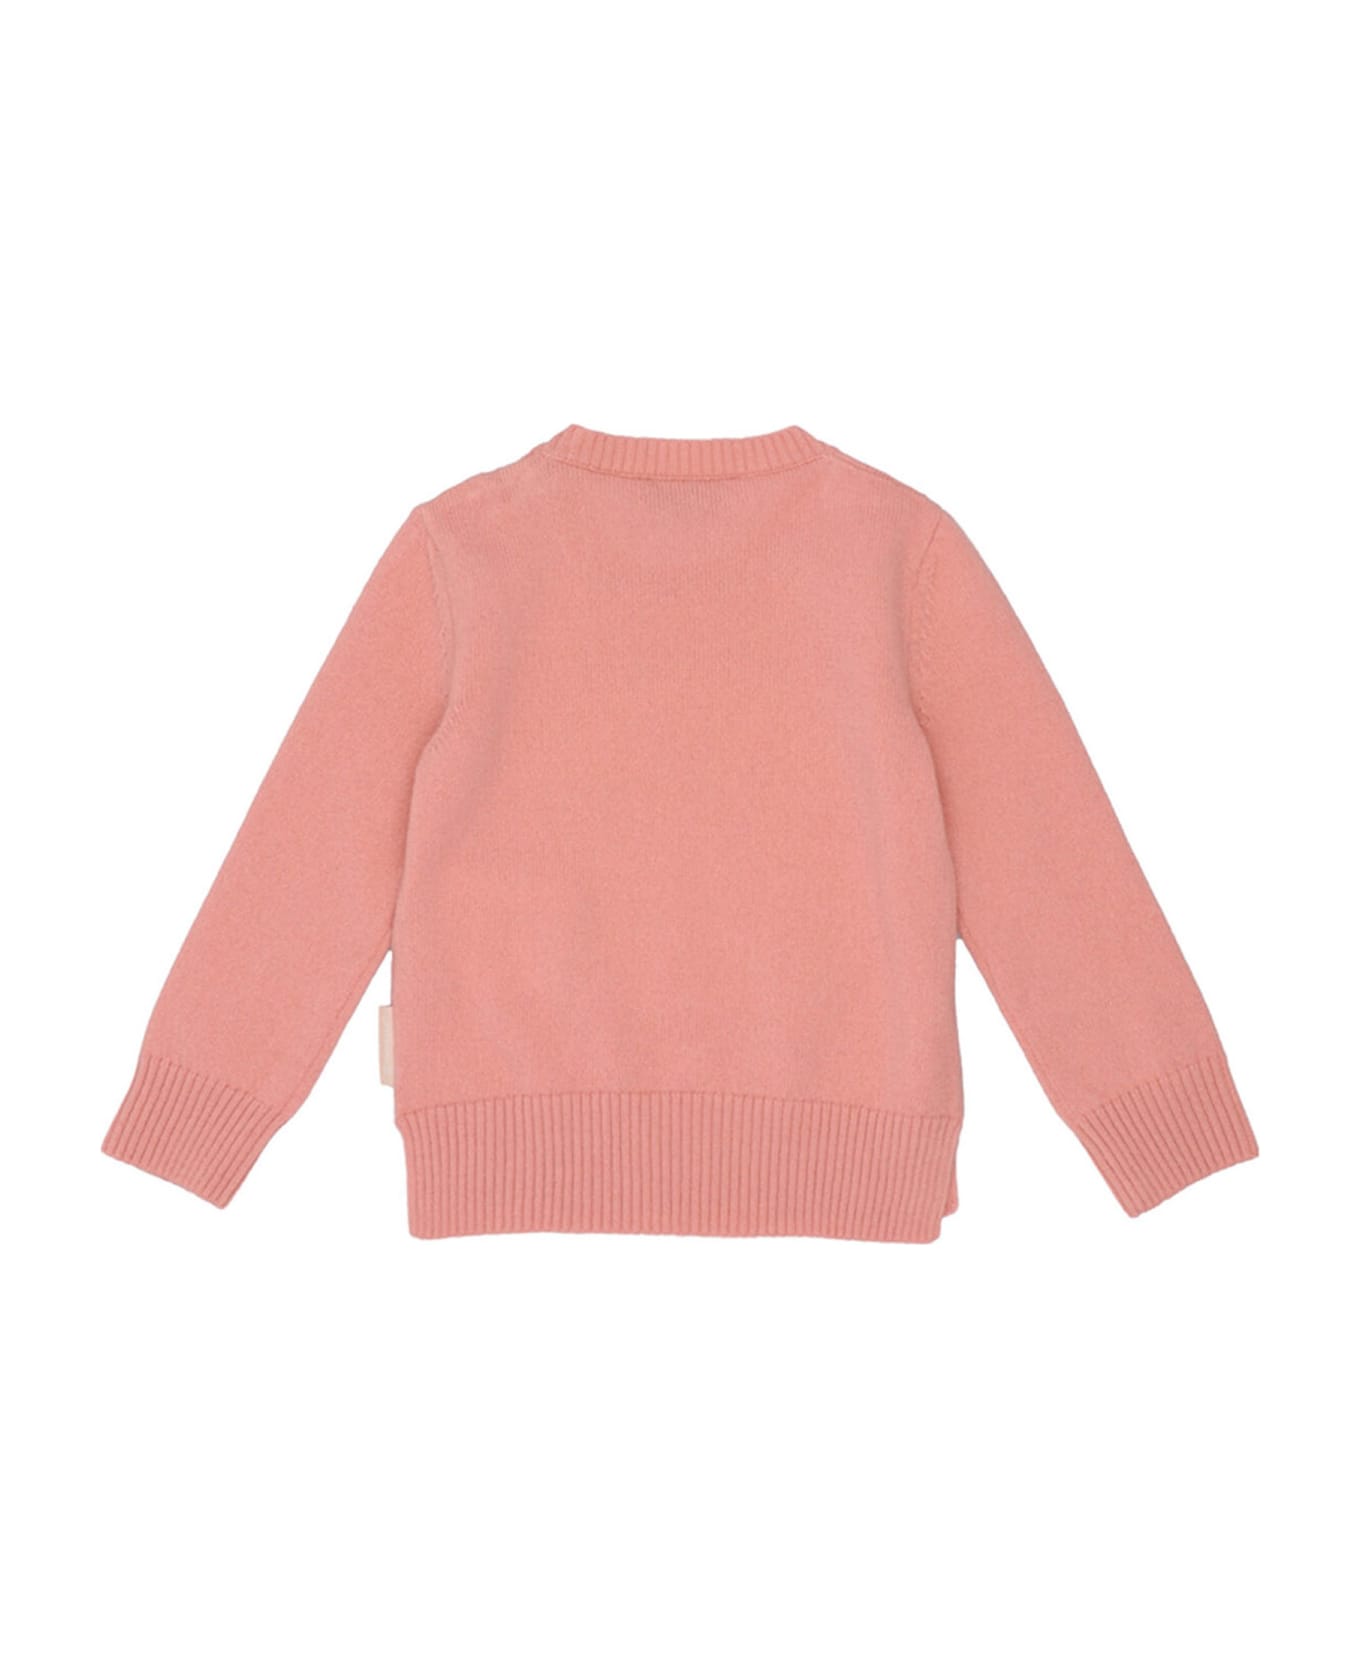 Moncler Logo Sweater - Pink